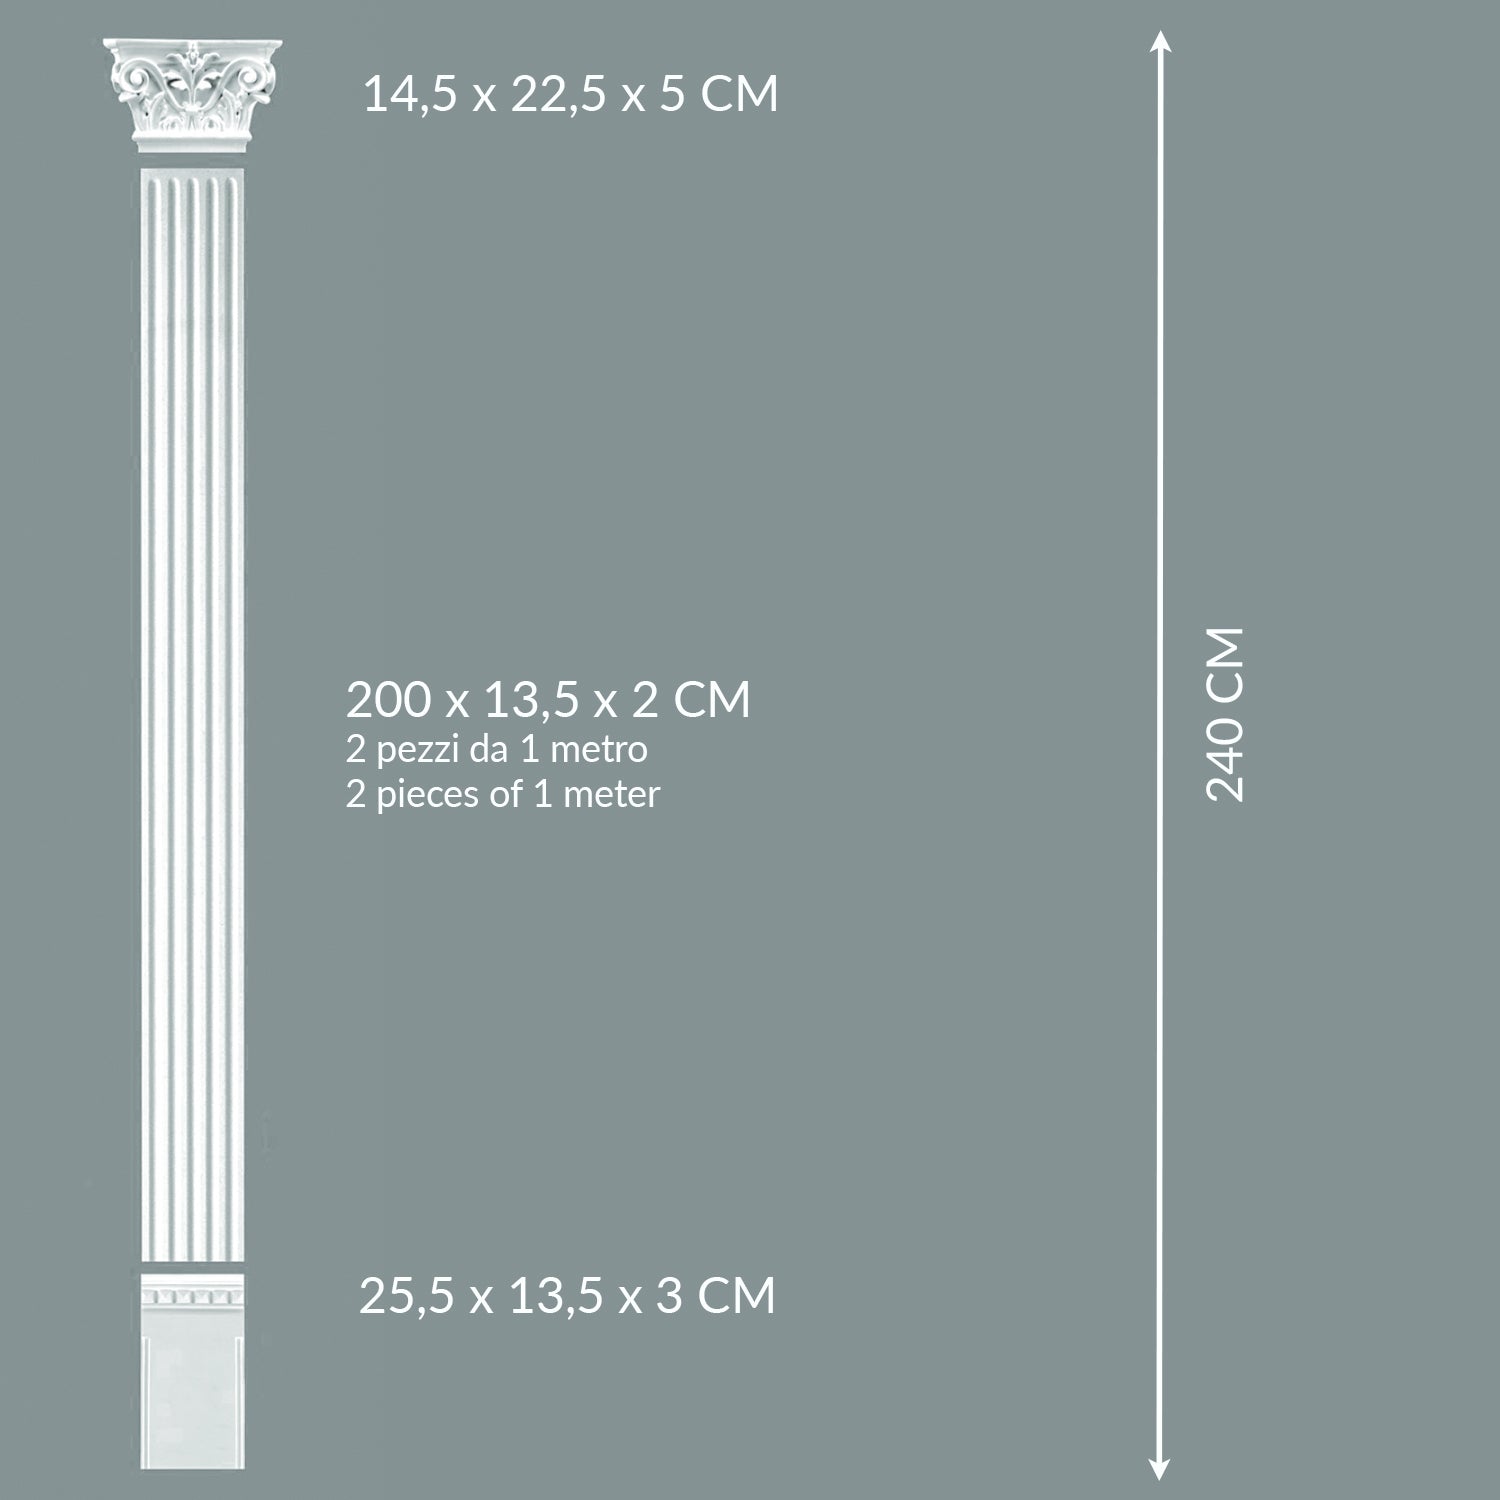 Lesena decorativa in stile corinzio a parete,  pilastro colonna piatta romana, greca, in poliuretano robusto | Altezza totale 240cm